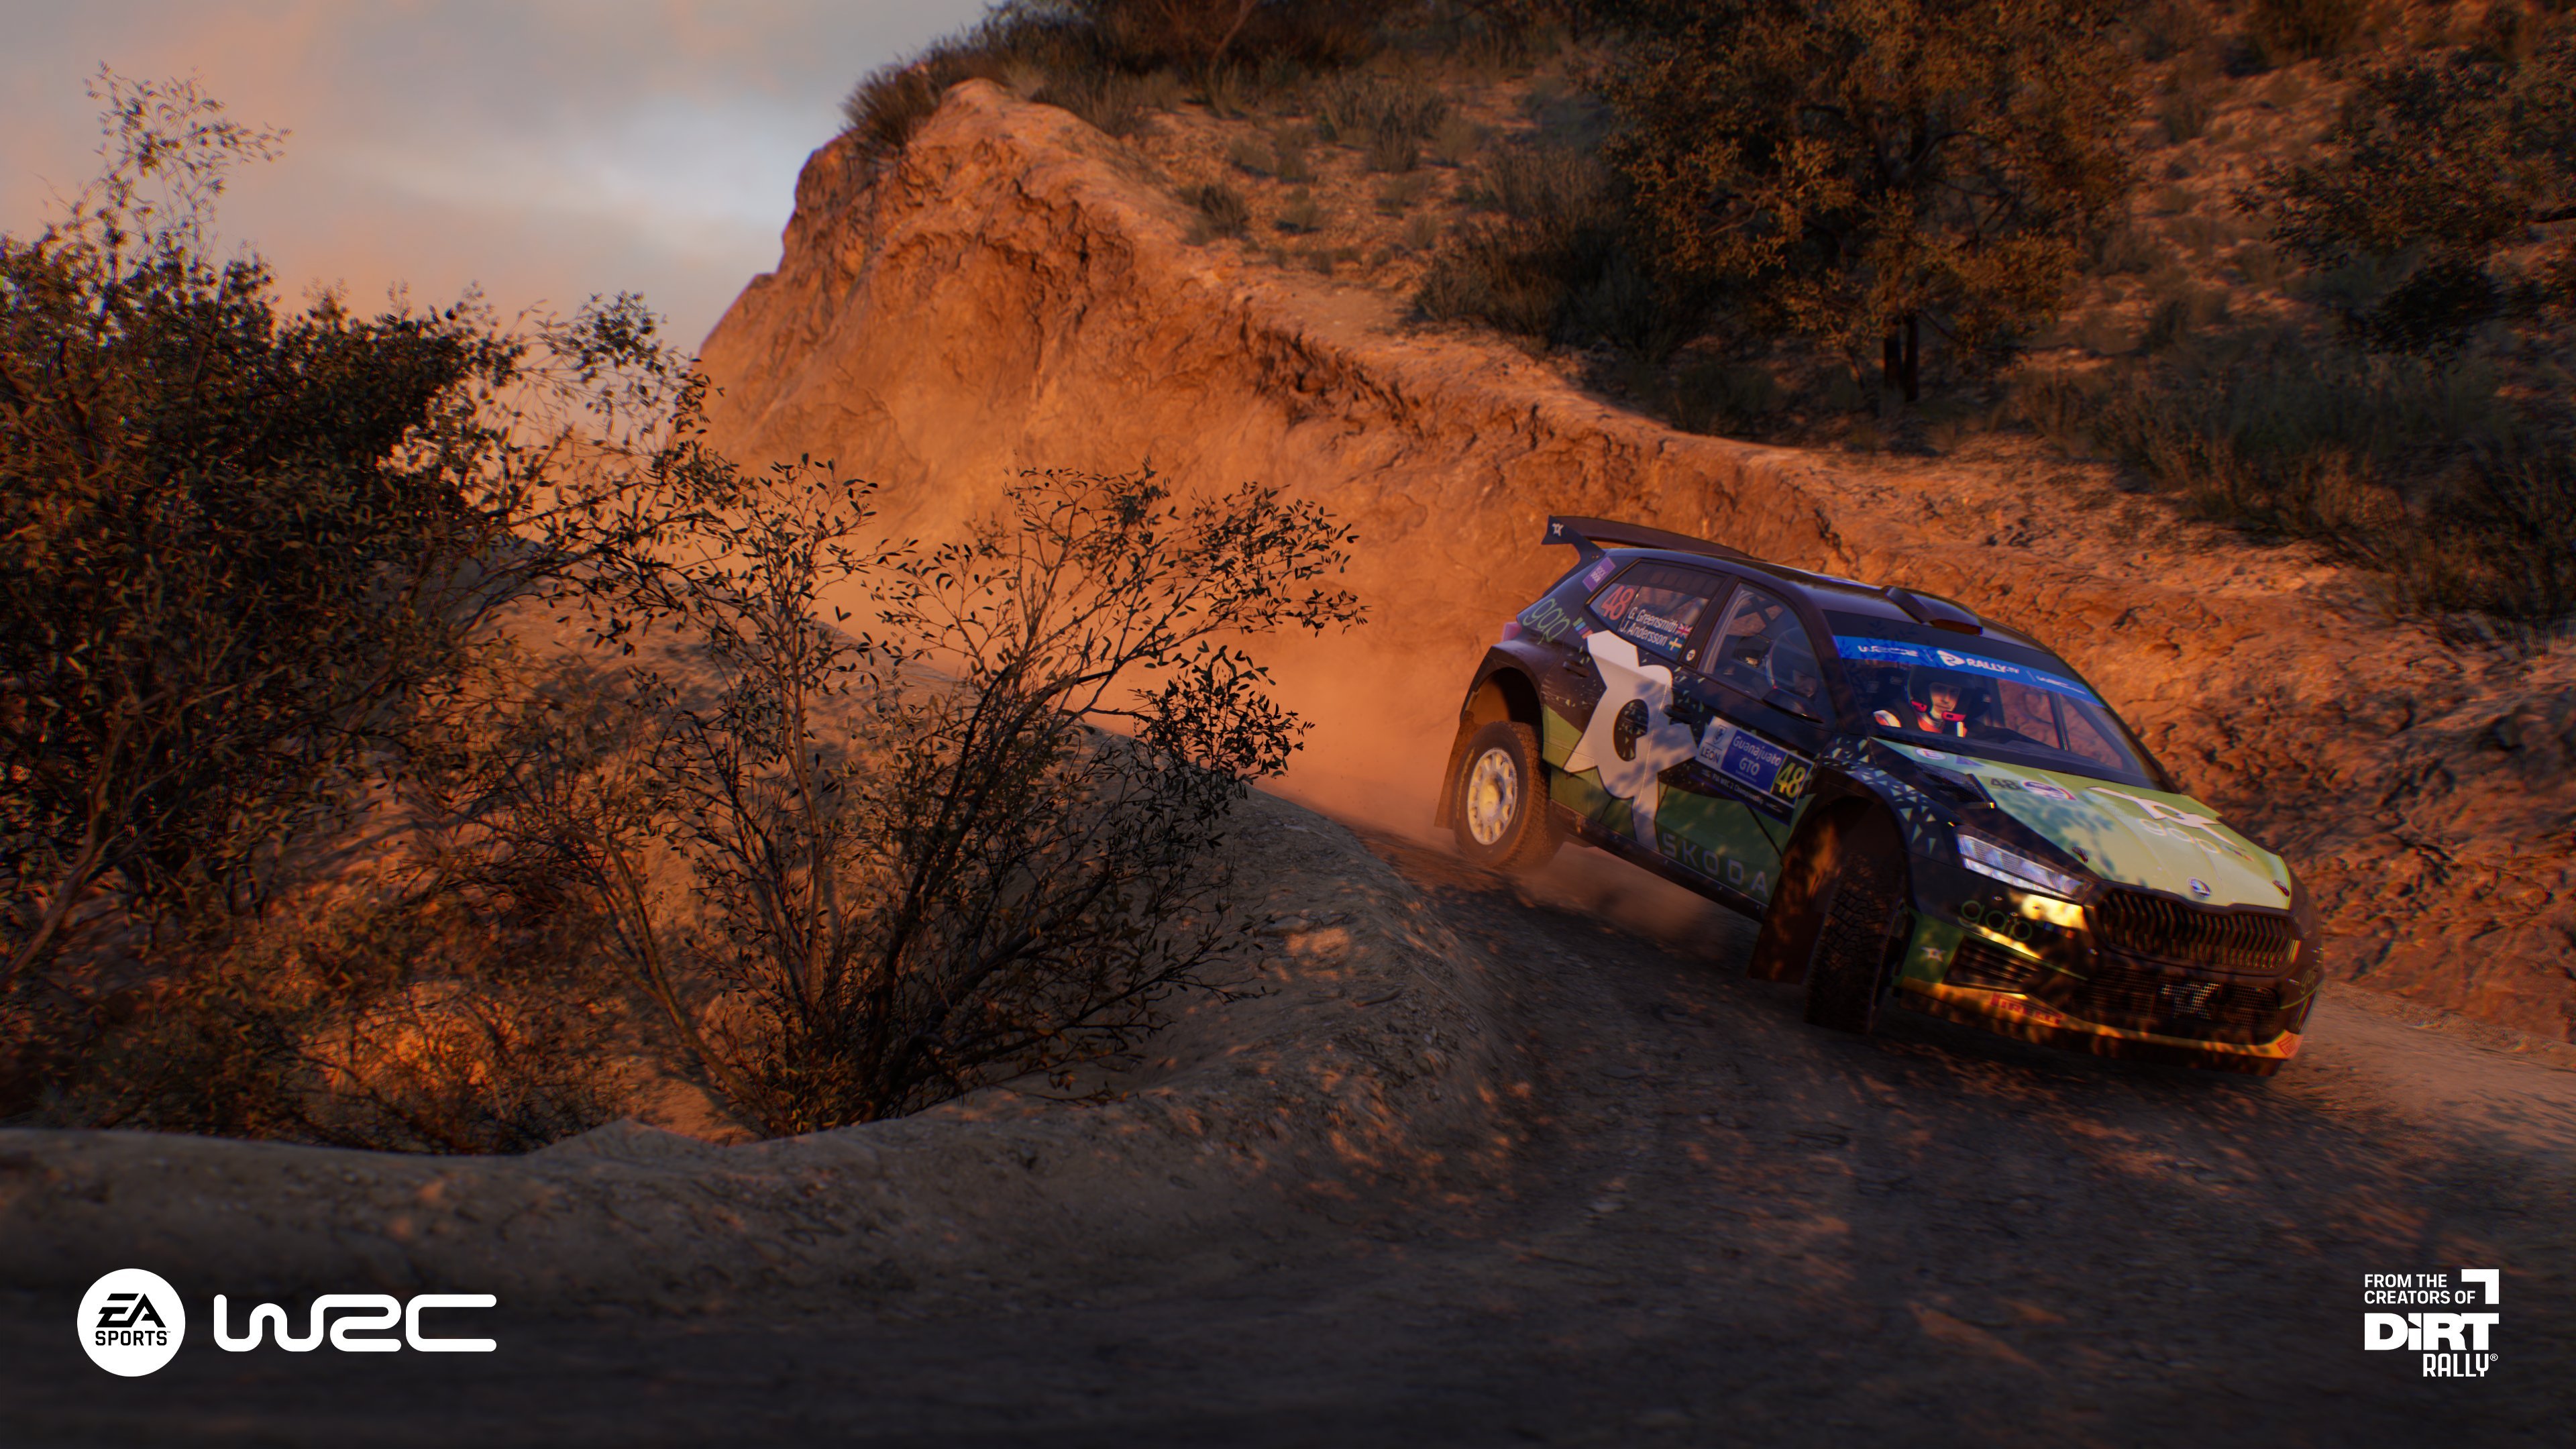 More information about "Anteprima EA Sports WRC: ma si tratta DAVVERO di un simulatore di rally?"